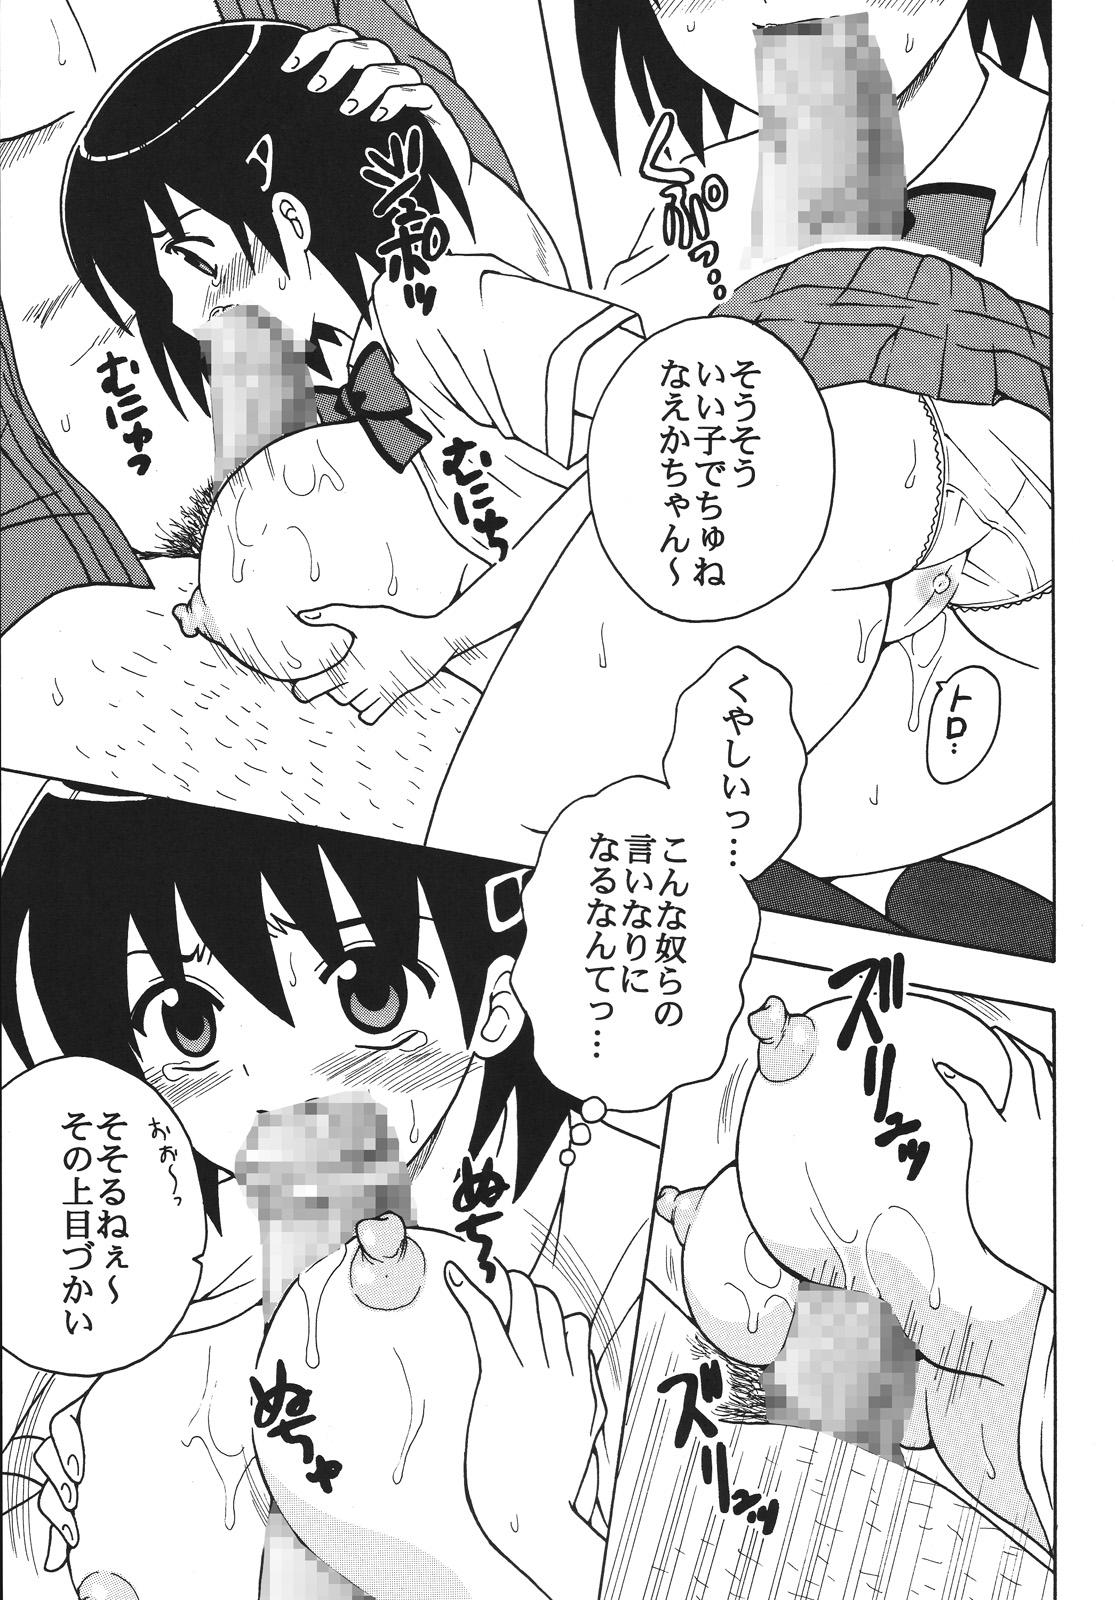 Piercing Nakadashi Maid no Hinkaku 1 - Kamen no maid guy POV - Page 8